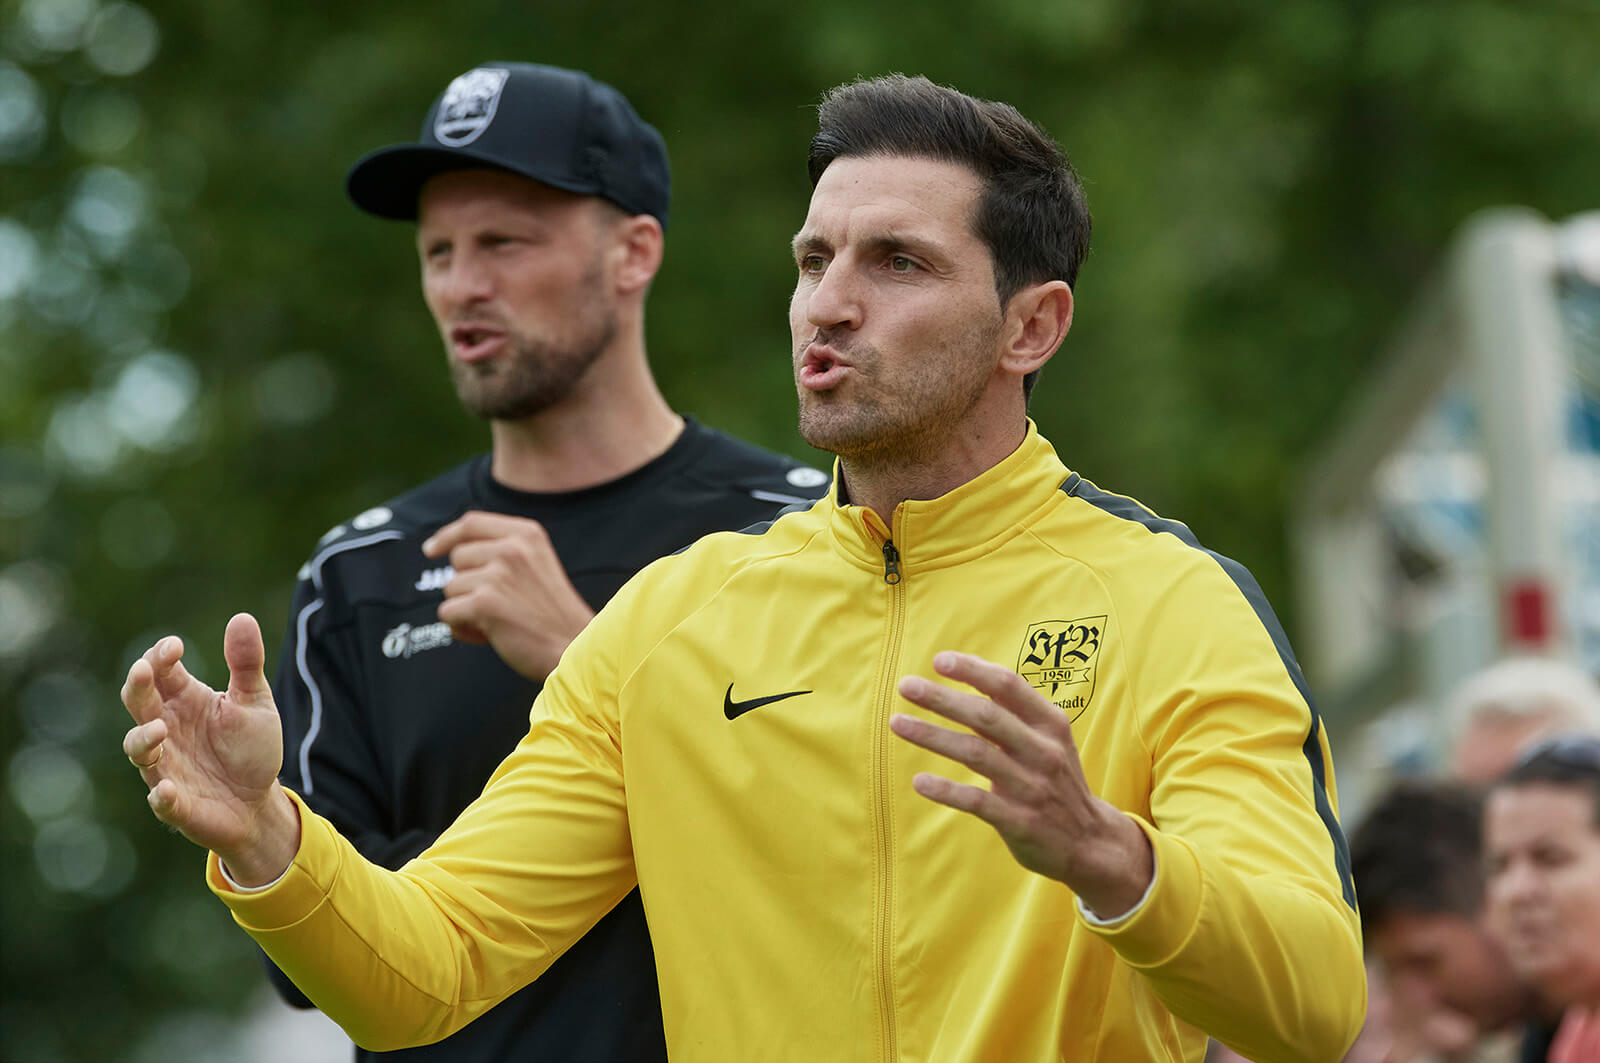  VfB Gartenstadts Trainer Markus Urban, li. und Co-Trainer Kristijan Vidakovic nahmen mit ihrem Team die erste Runde in den Aufstiegsspielen erfolgreich. Bild: Berno Nix.